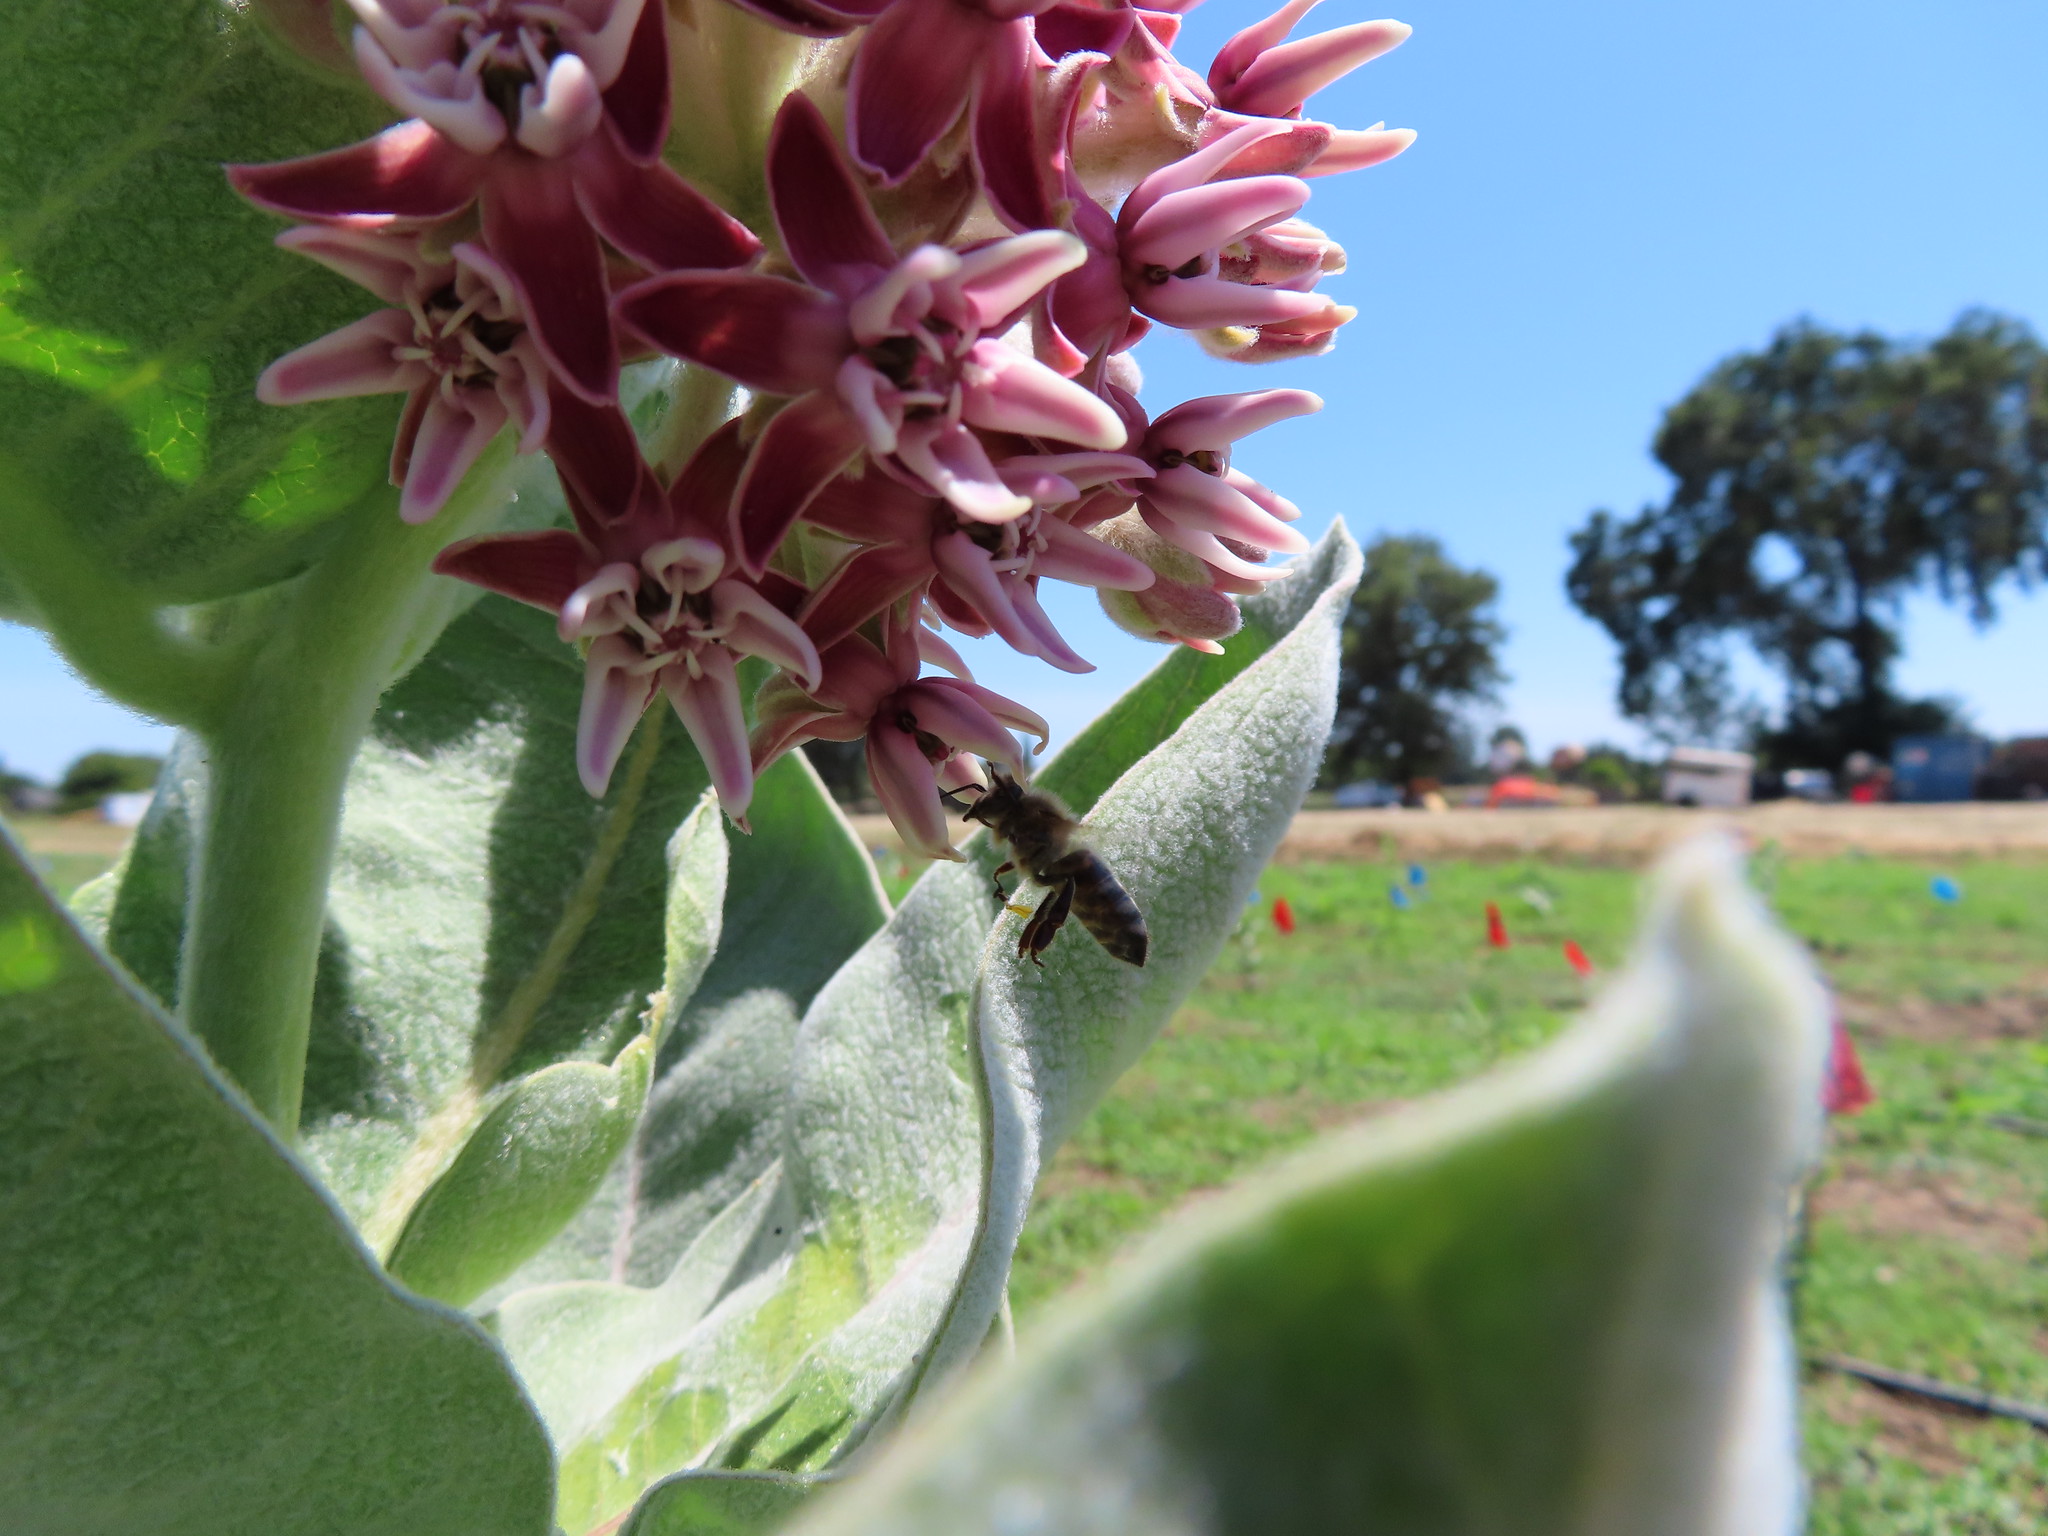 Honeybee on milkweed